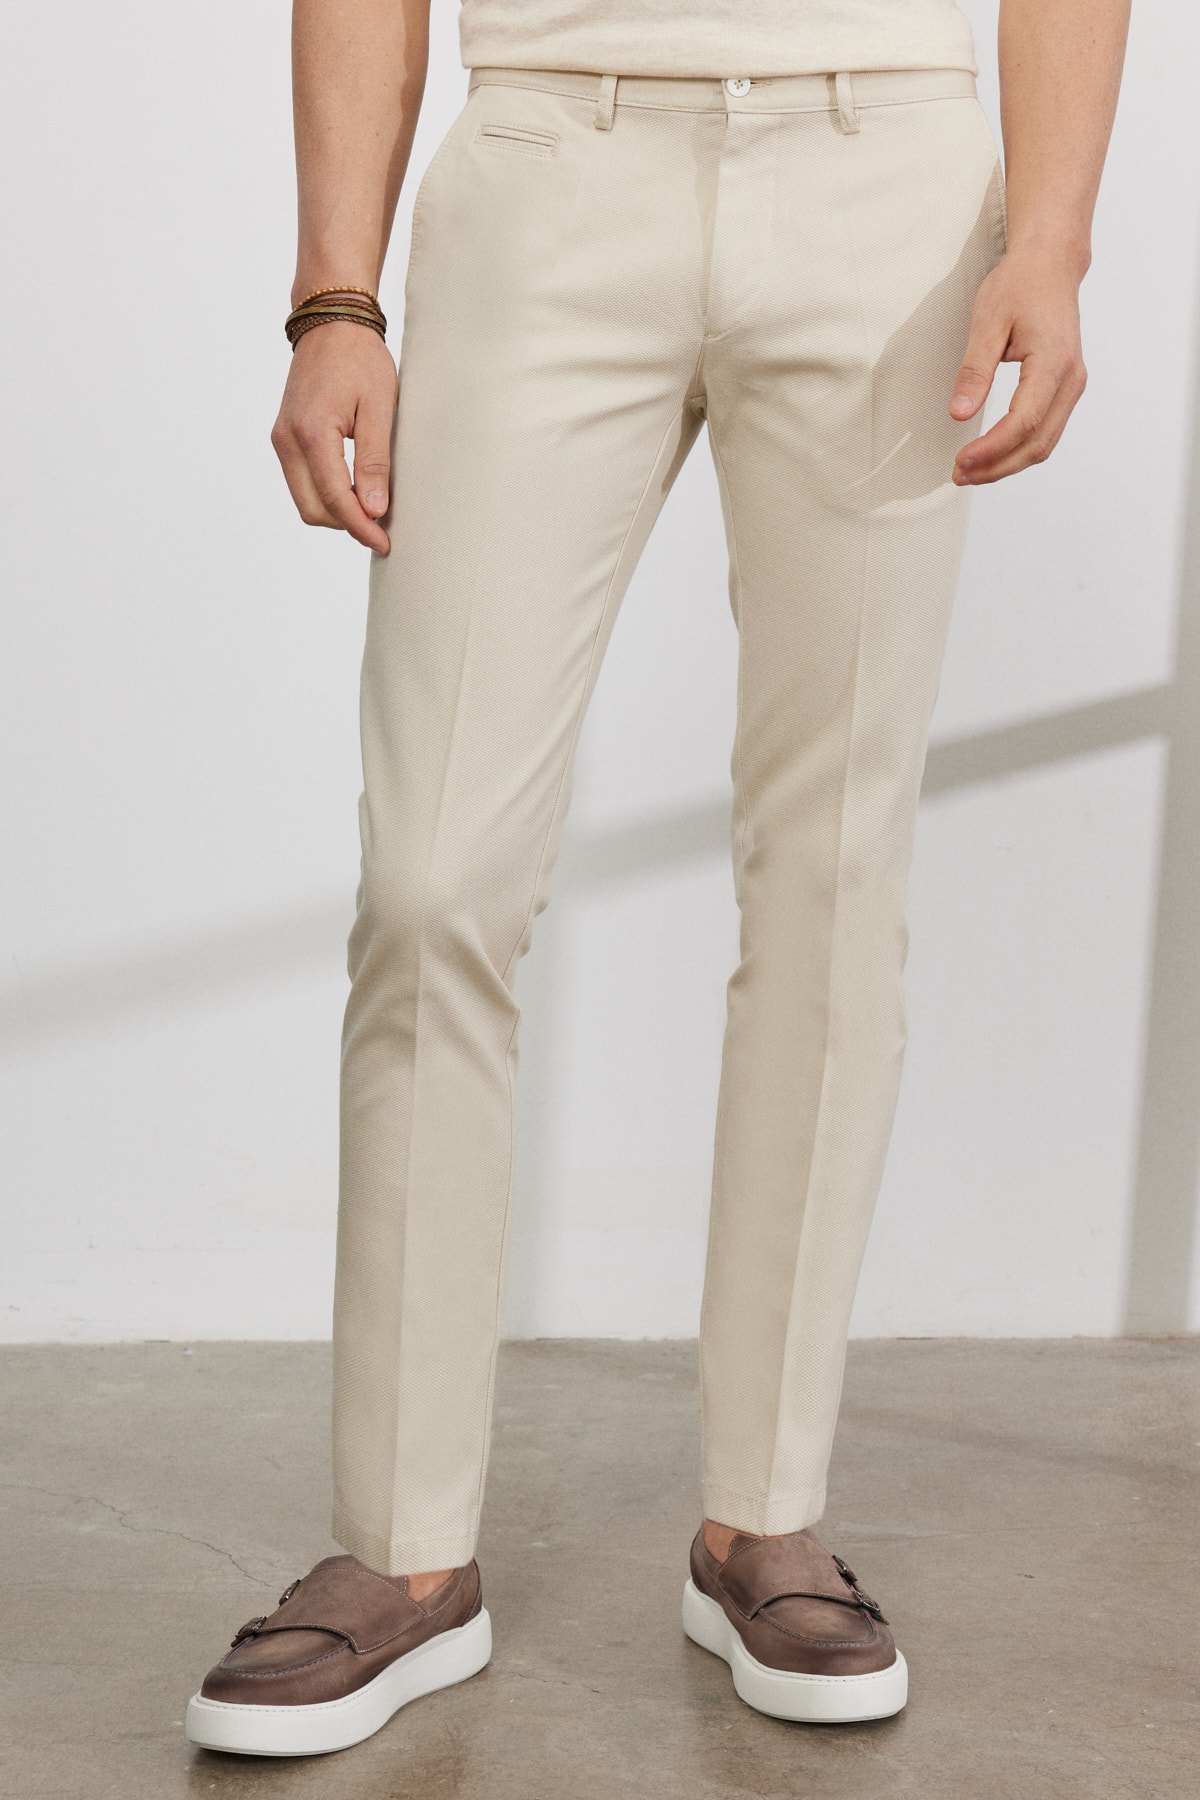 Levně AC&Co / Altınyıldız Classics Men's Ecru Slim Fit Slim Fit Trousers with Side Pockets, Cotton Stretchy Dobby Trousers.